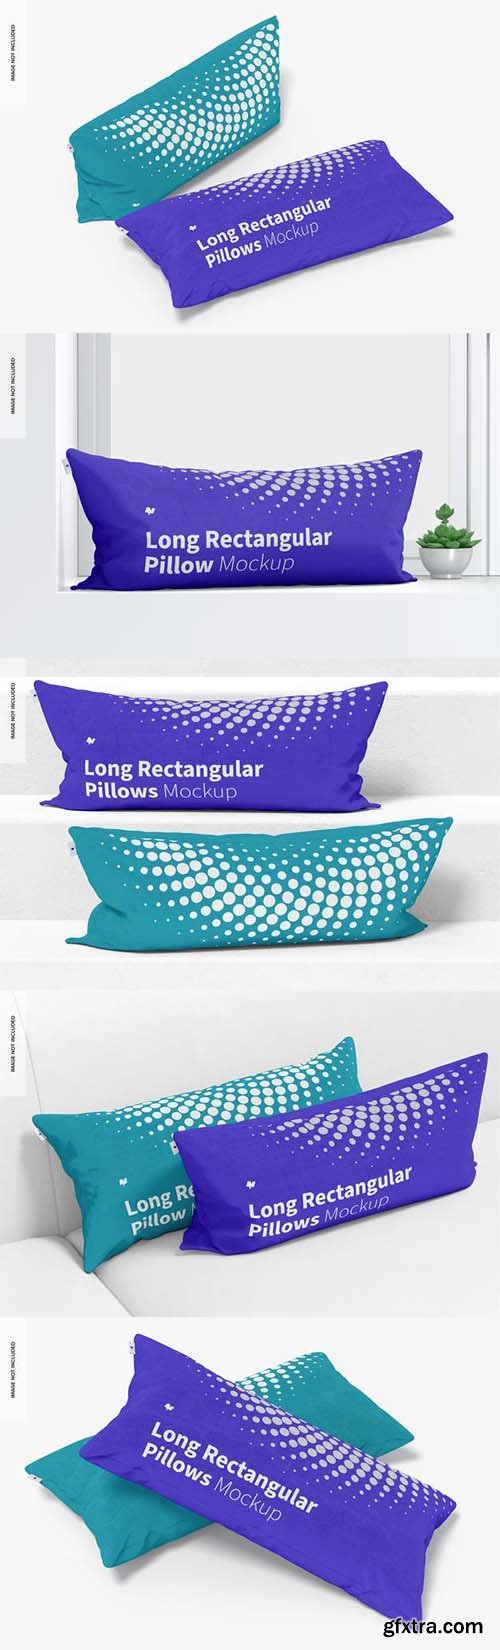 Long rectangular pillows mockup